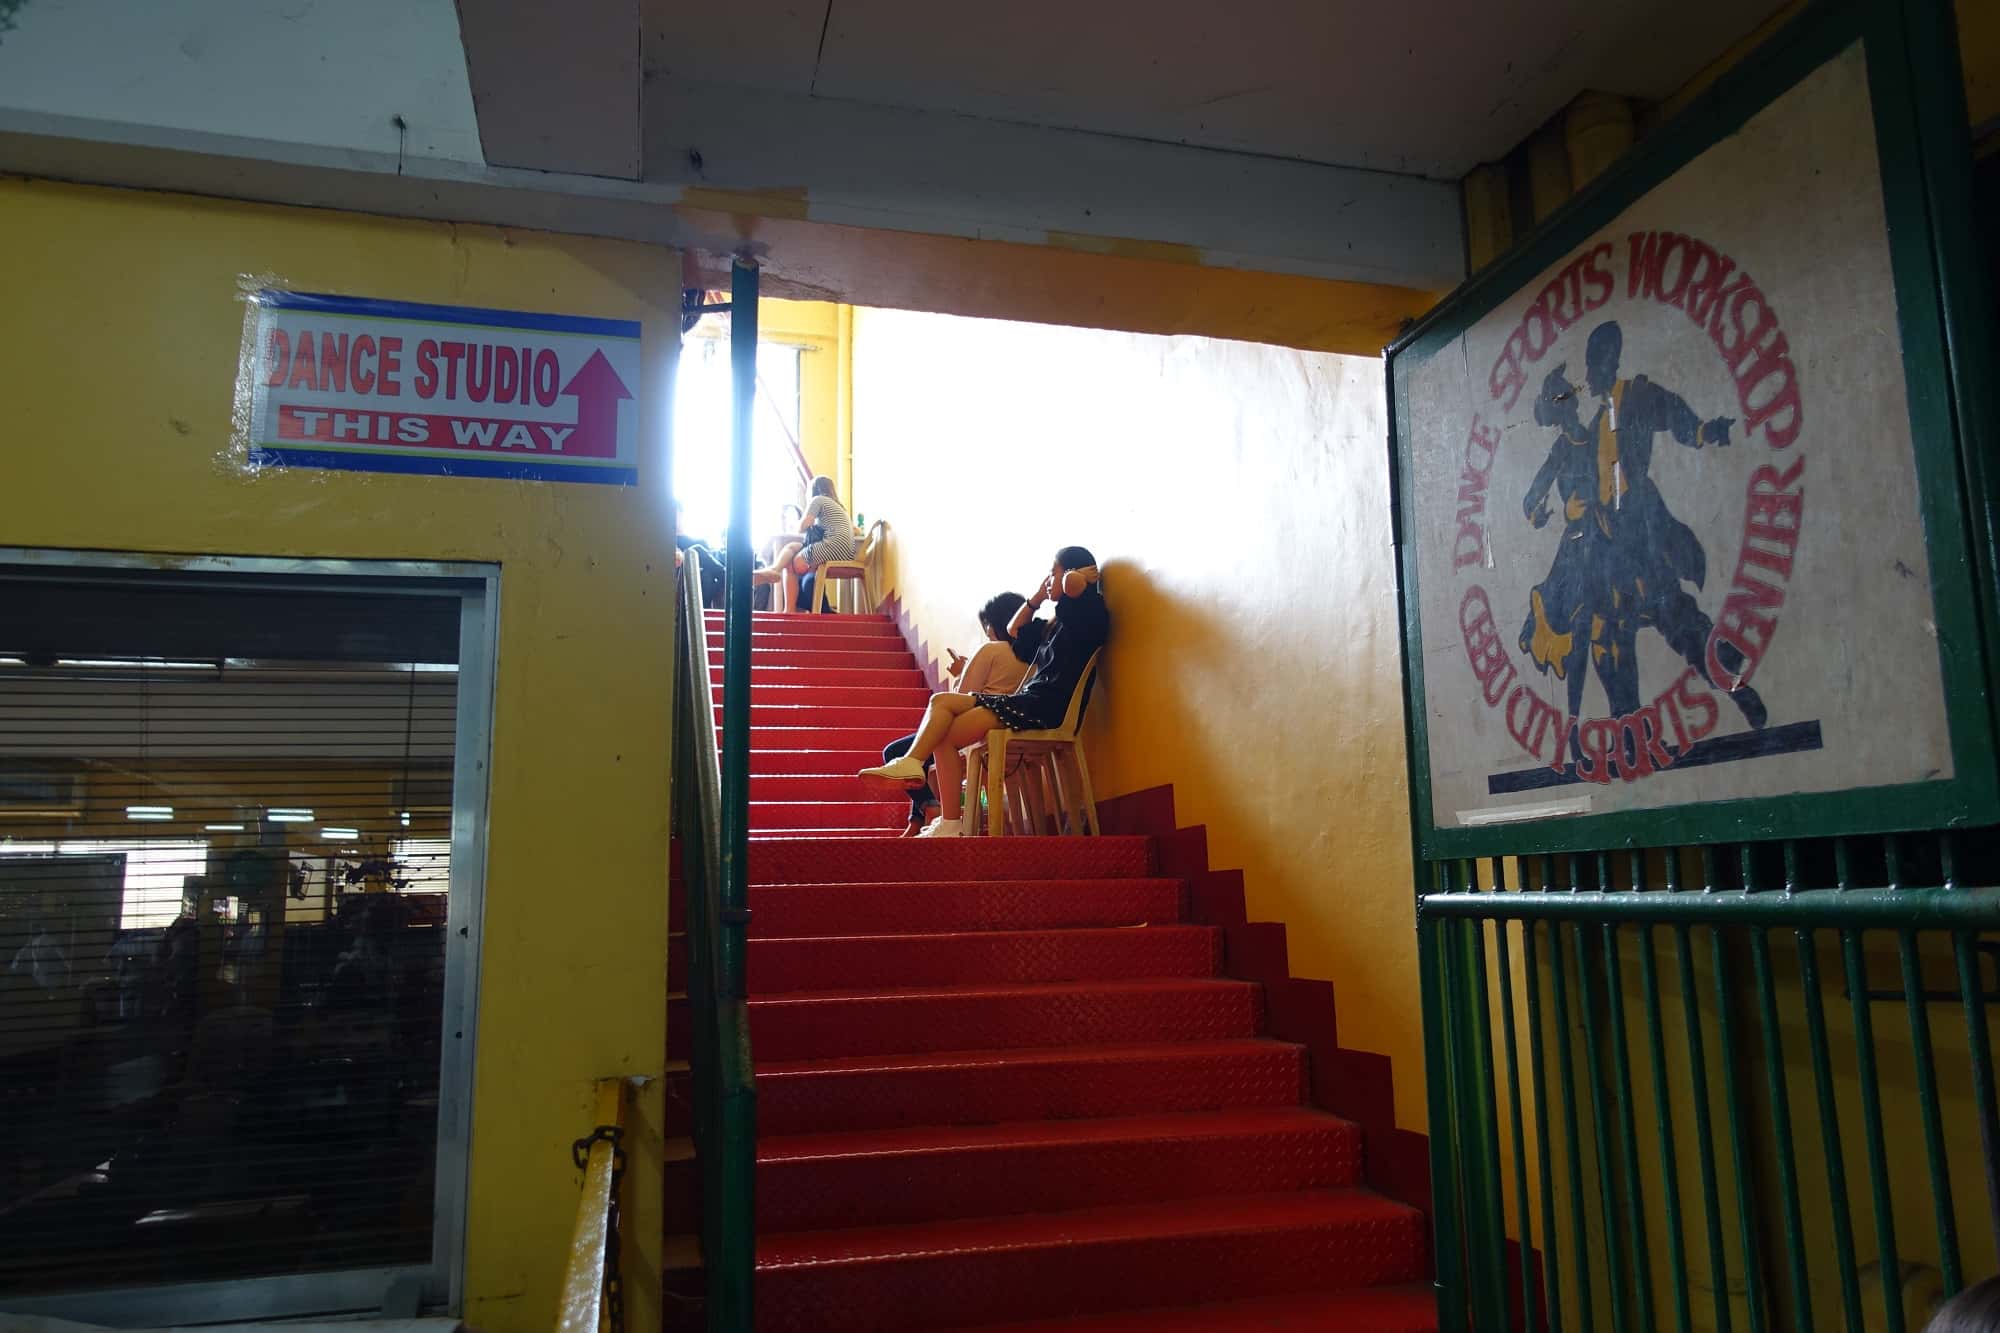 Abellana Sport Centerアベリアナ・スポーツセンターのダンススタジオへ向かう階段